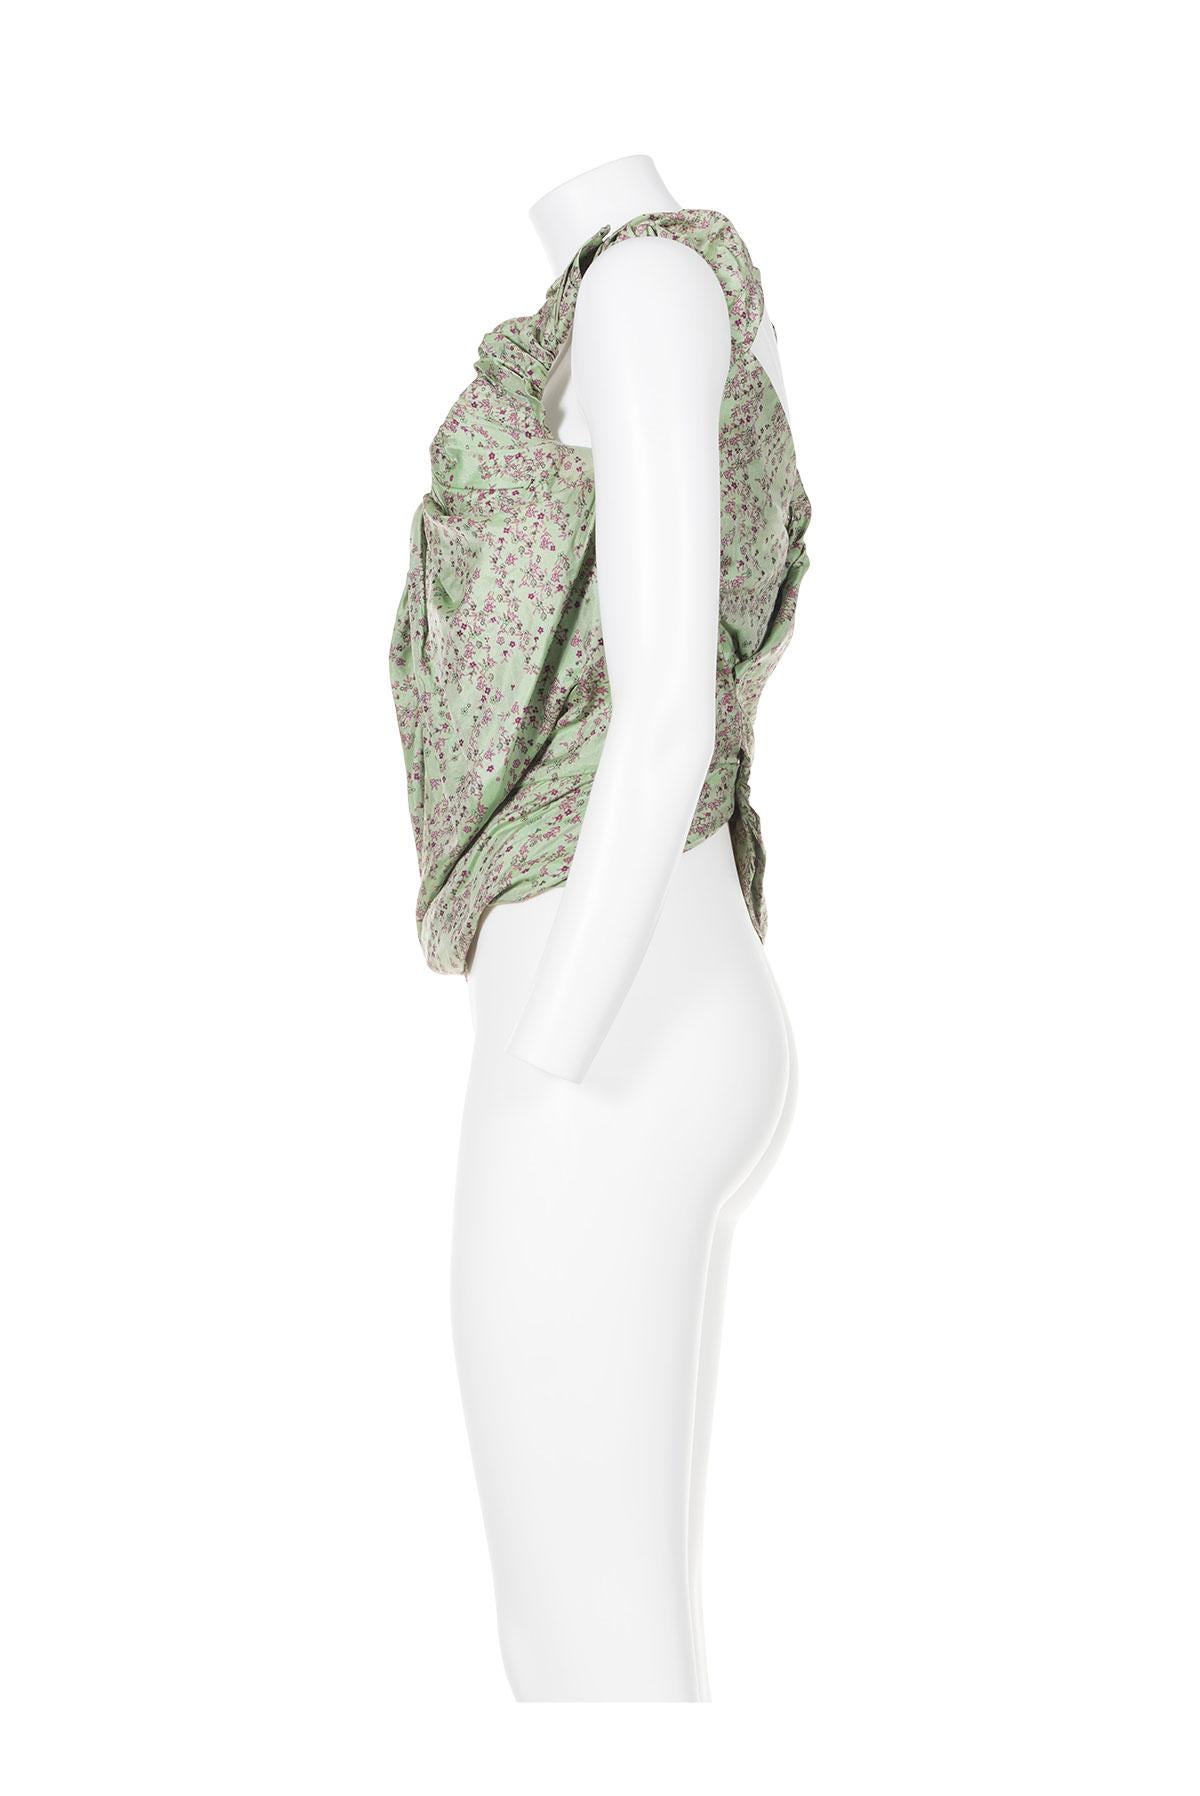 Le bustier emblématique des années 2000 de Vivienne Westwood.
Tissu jacquard floral.
Bretelles volantées.
Fermeture éclair cachée et baleines.
Boutons-pression au dos.
L'étiquette de composition est manquante, il semble qu'il s'agisse de polyester. 